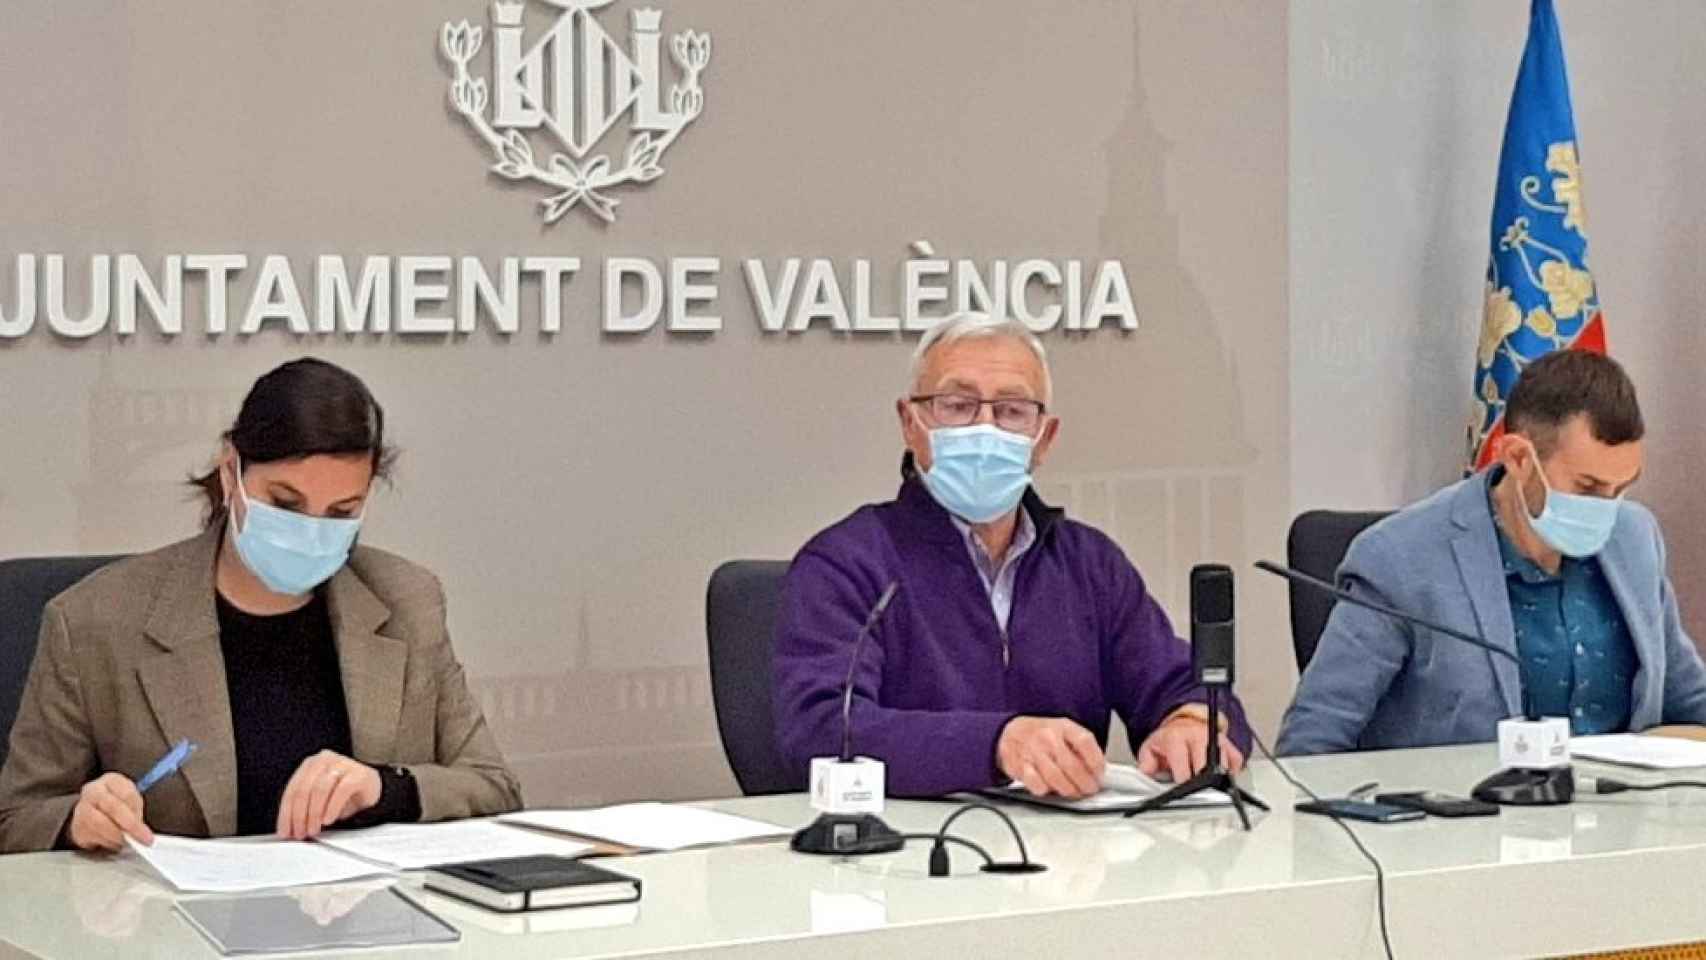 El alcalde de Valencia, Joan Ribó, flanqueado por sus vicealcaldes Sandra Gómez y Sergi Campillo. EE